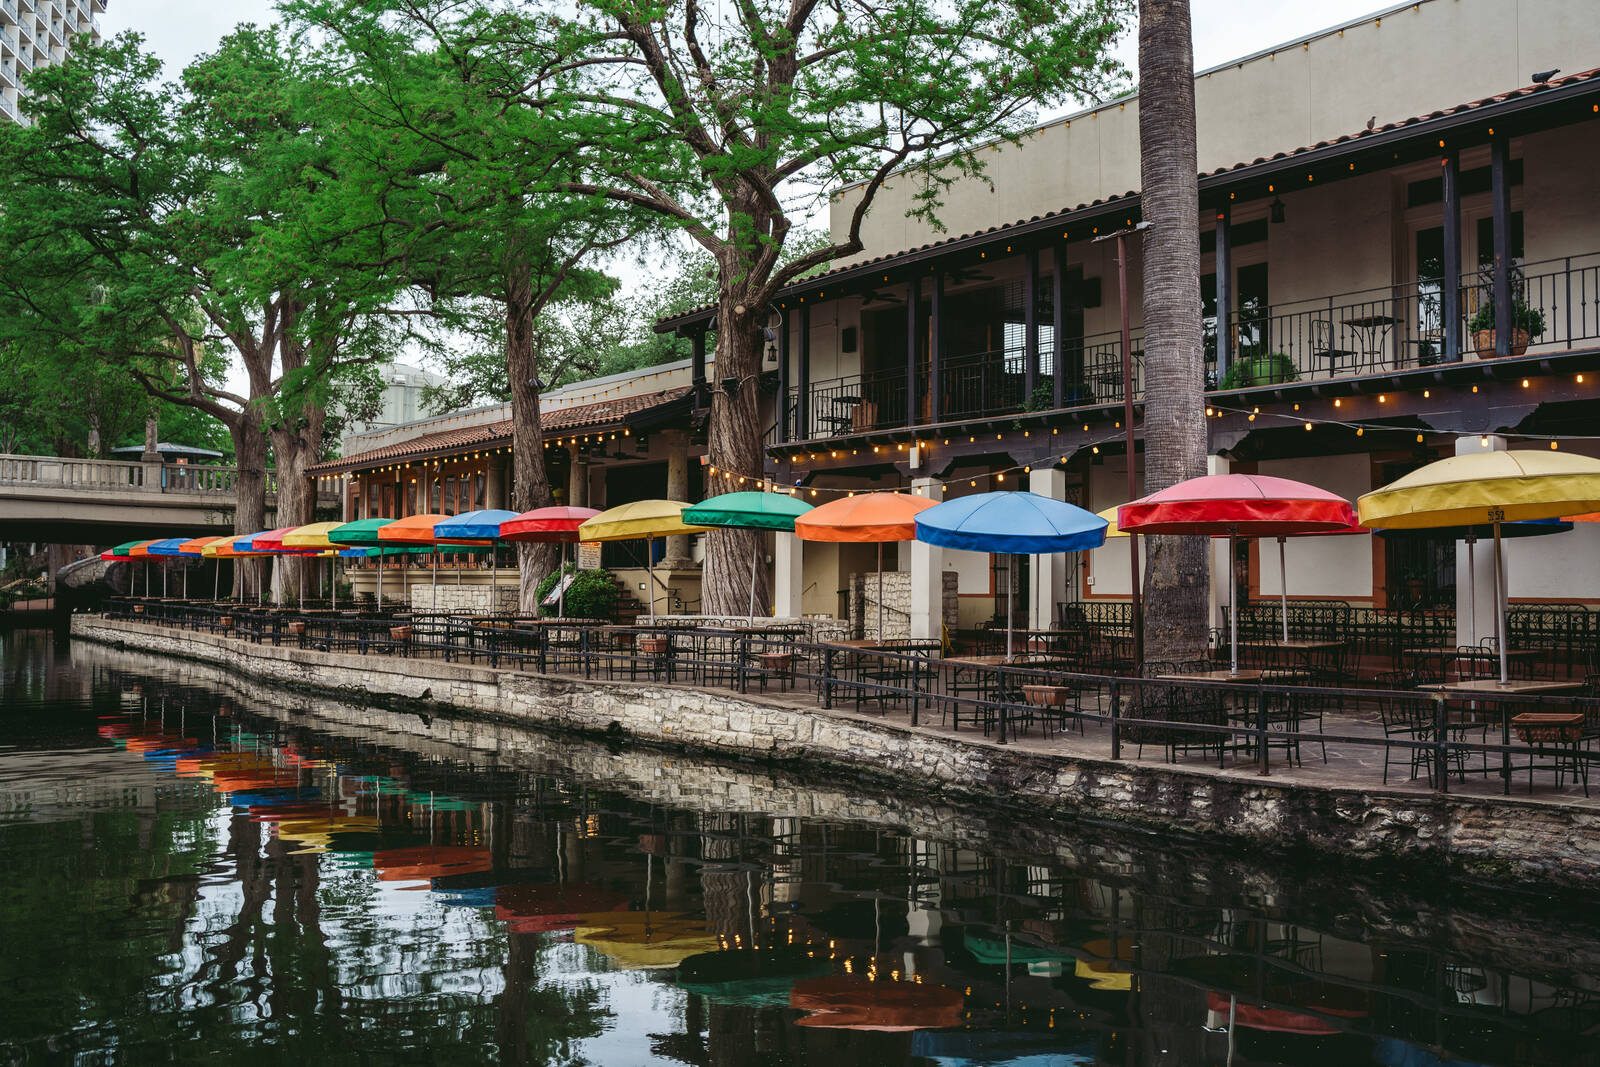 Image of San Antonio Riverwalk by James Billings.